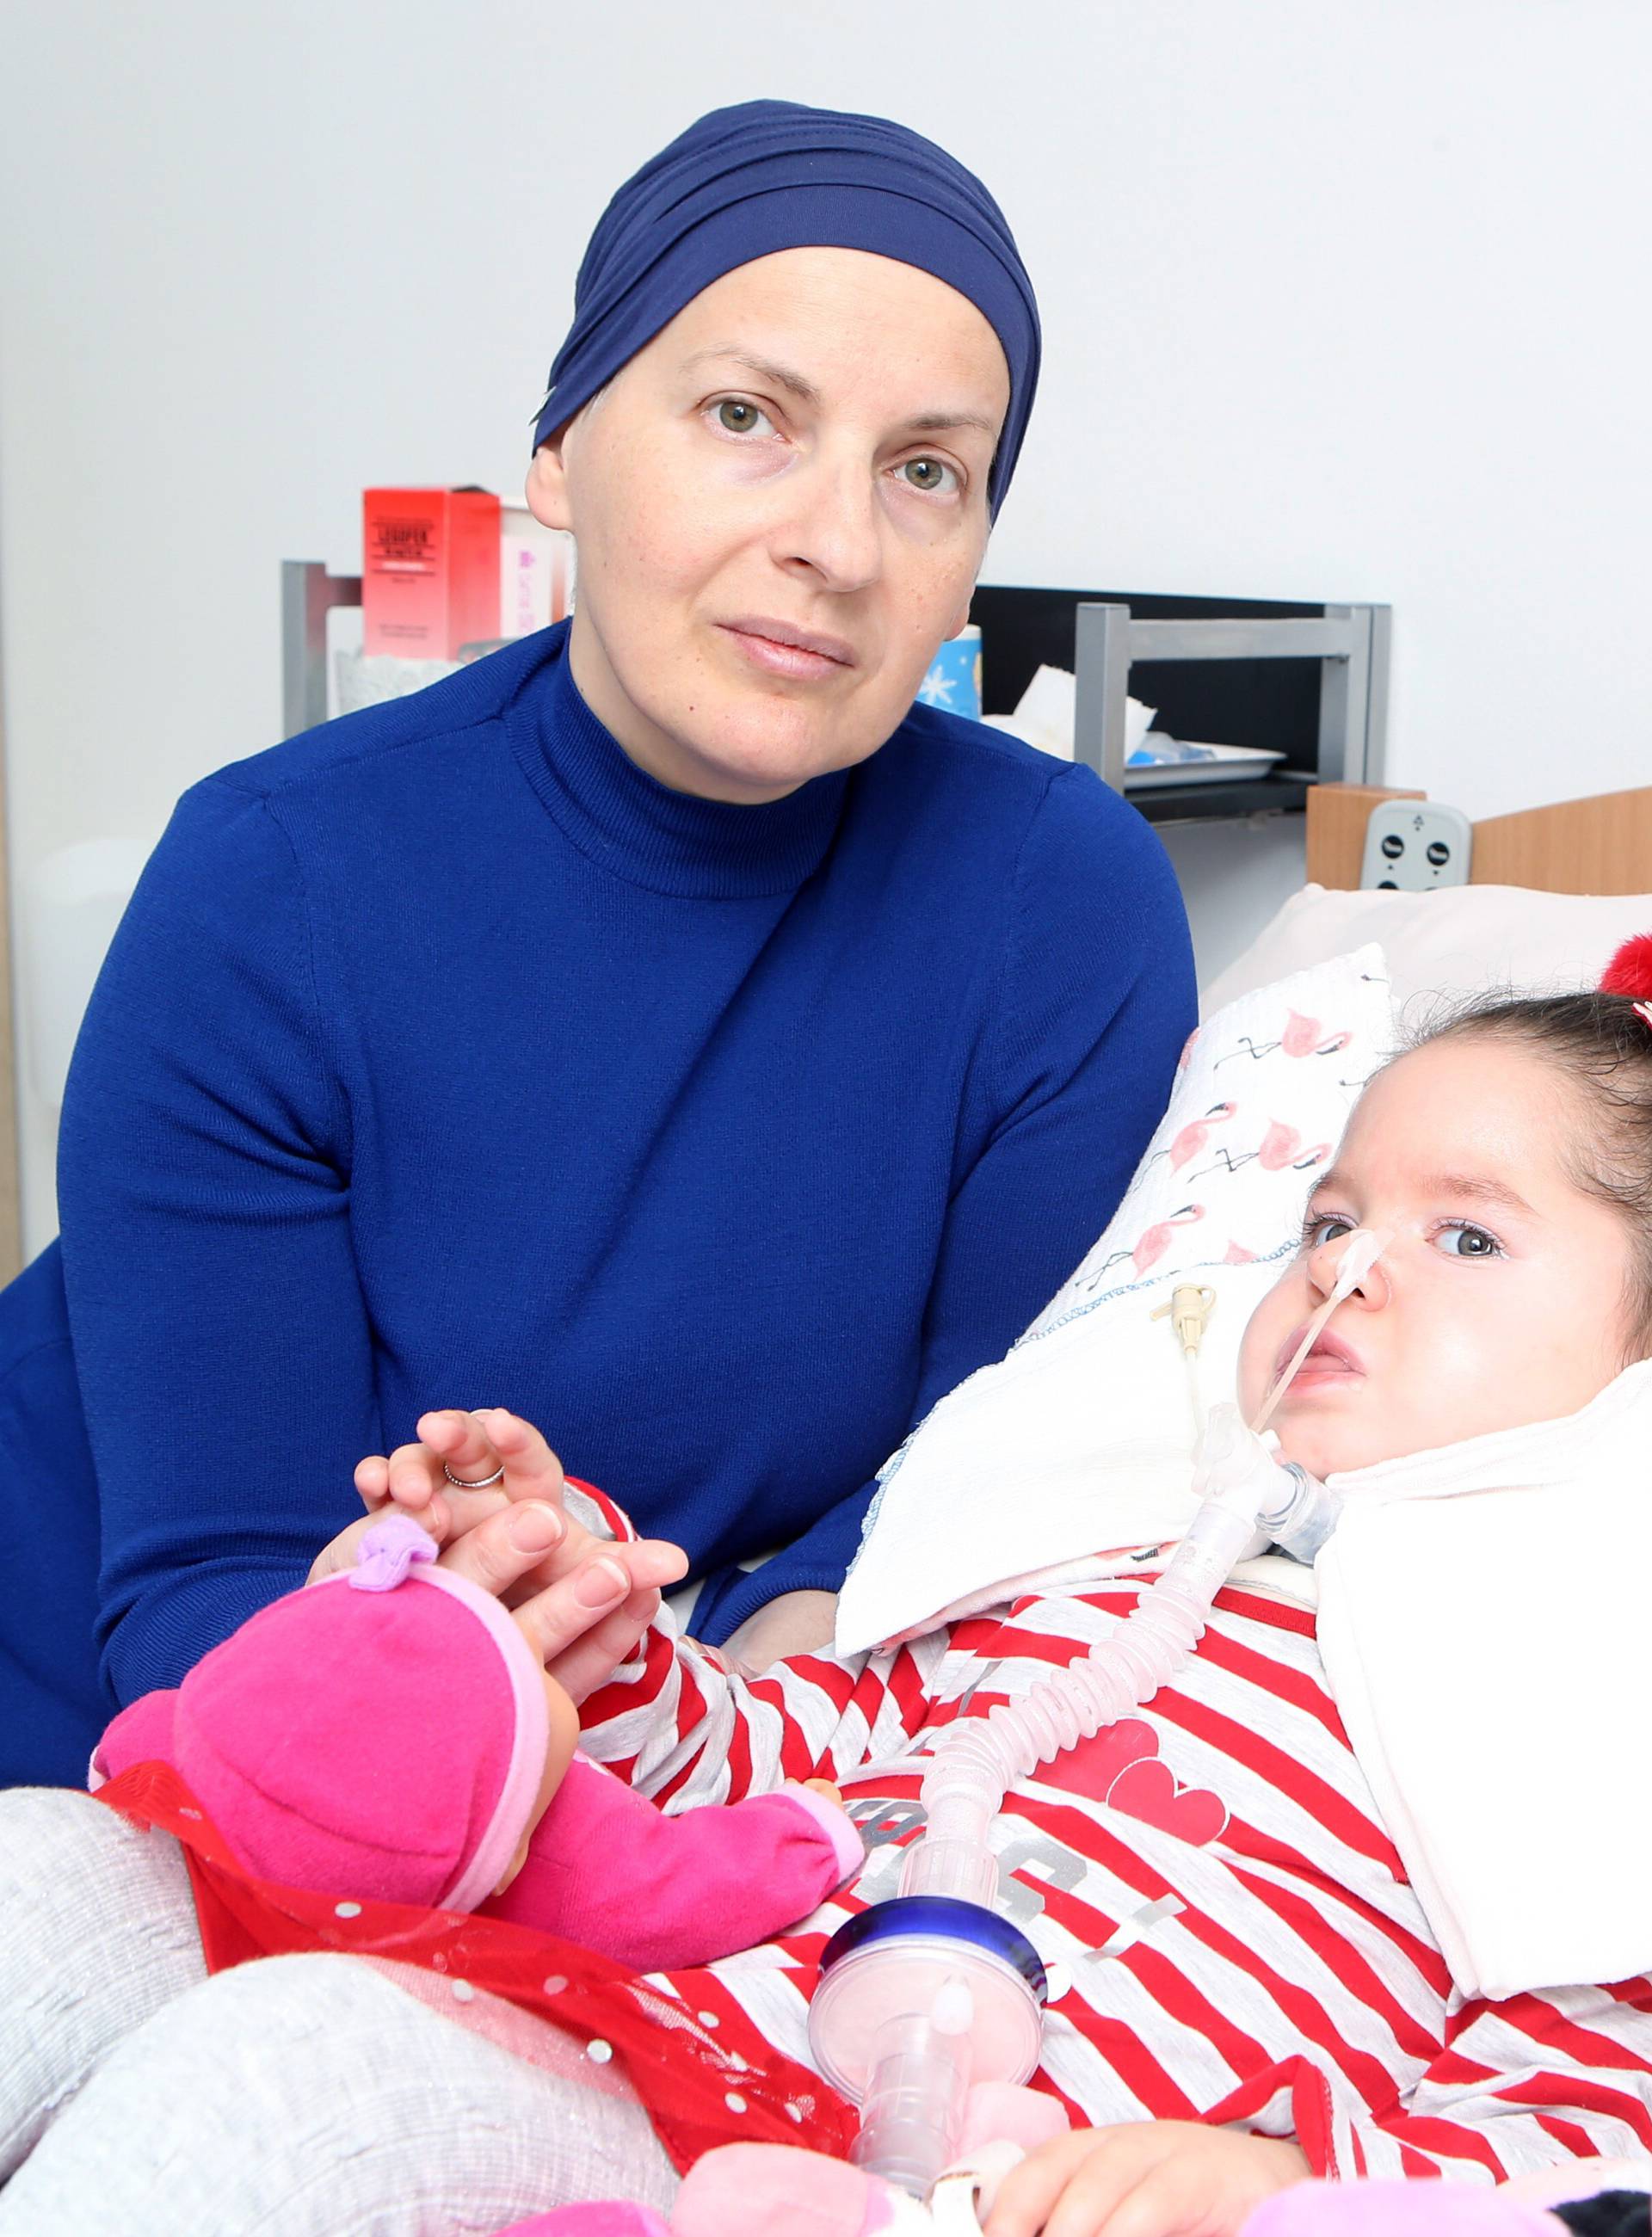 Majka hrabrost: U borbi za kćer i sama je oboljela od karcinoma